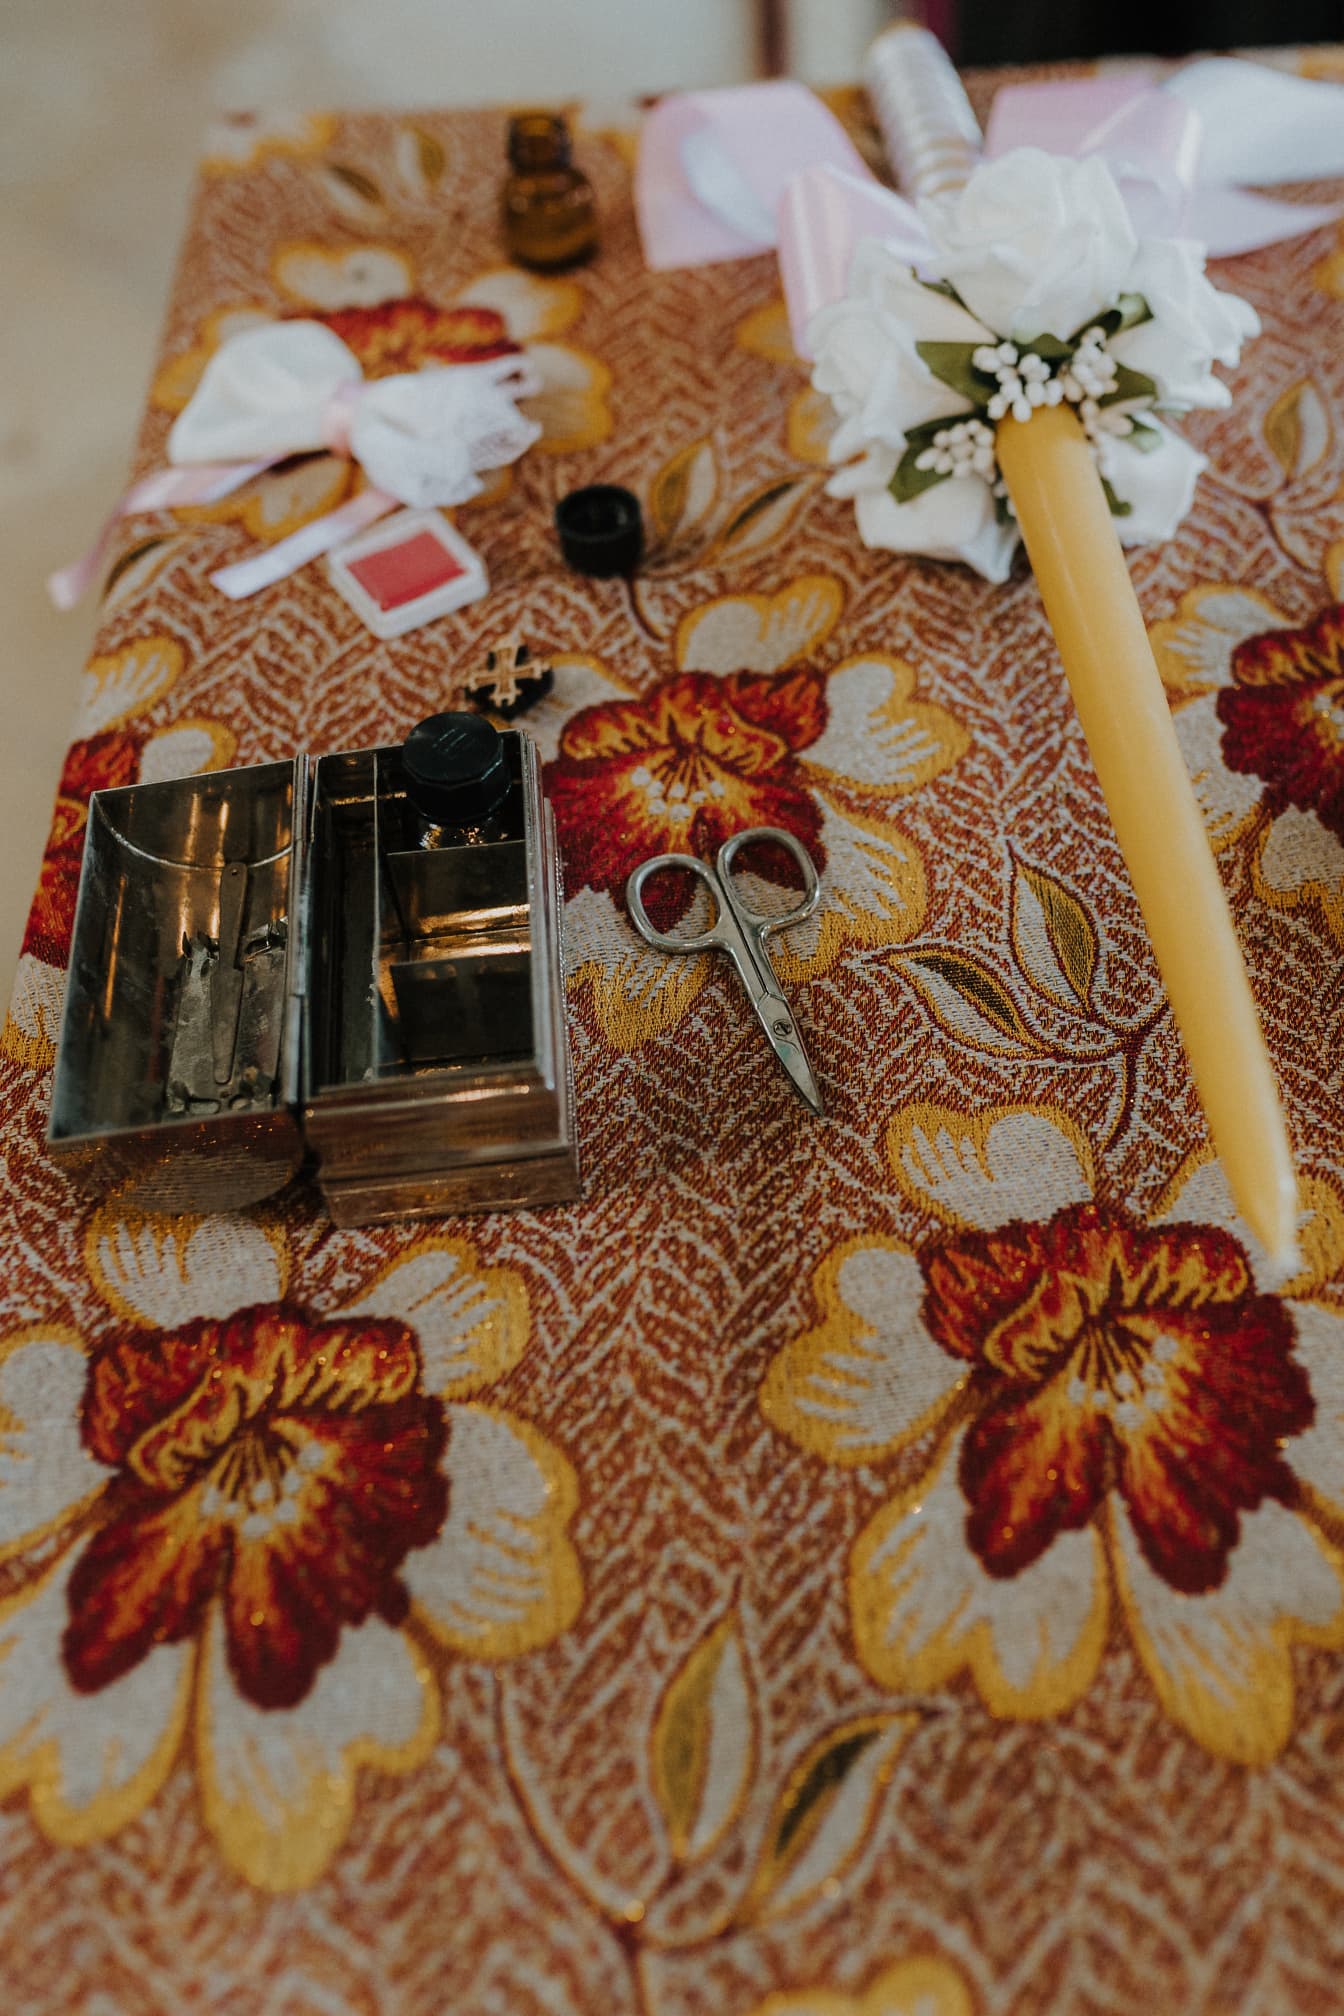 Metallboks med saks og et lys på en blomsterduk klargjort for dåpsseremonien